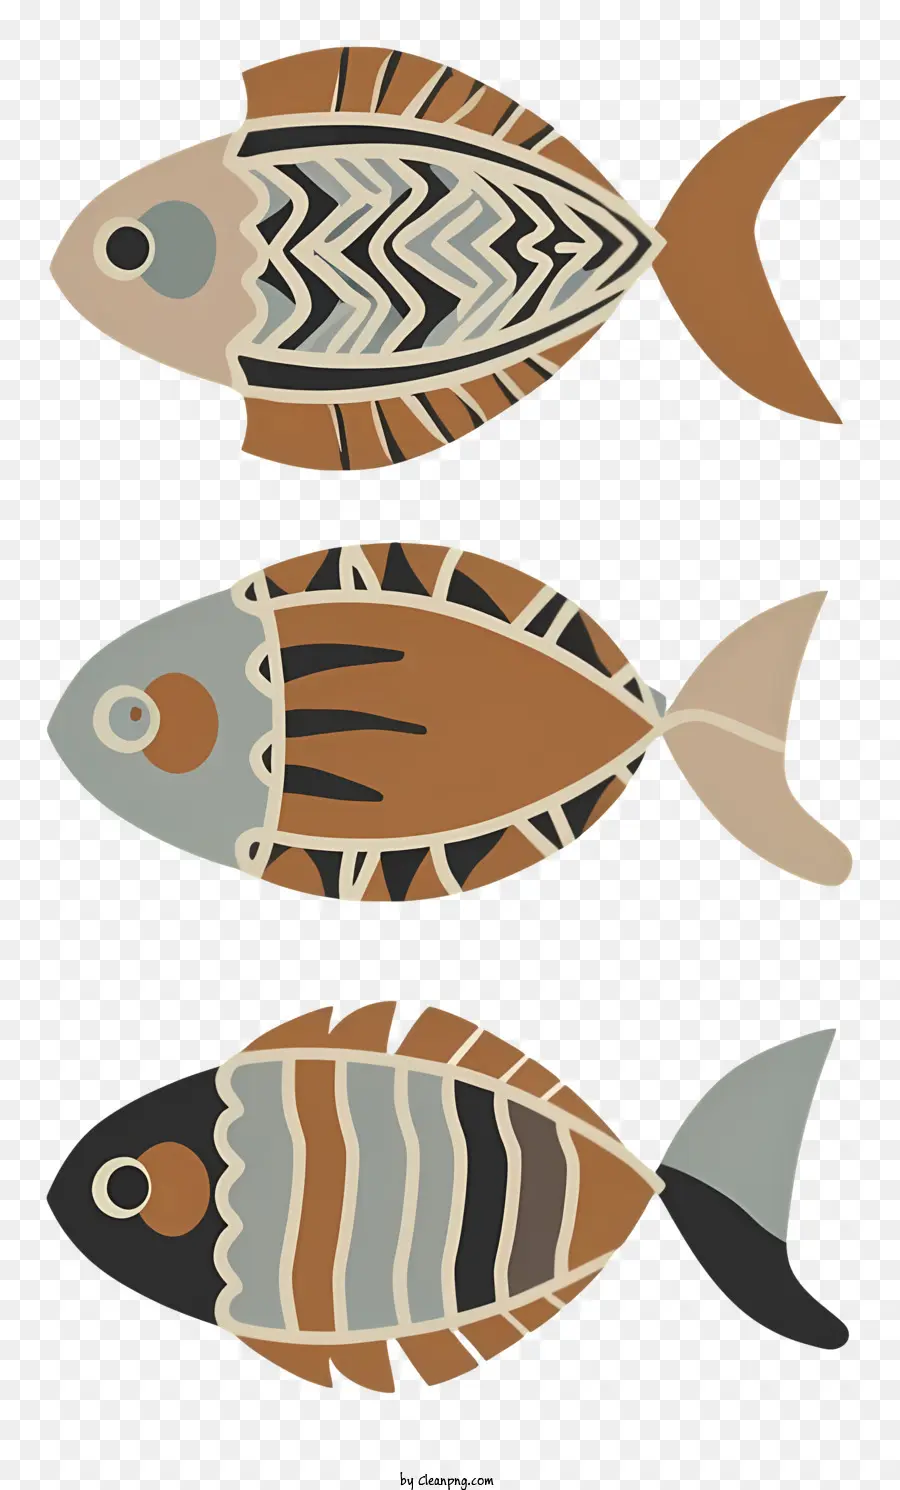 Mẫu cá sọc cá cá xanh và xanh cá cam và cá nâu cá đỏ và đen - Ba con cá với các mẫu và hình dạng sọc khác nhau